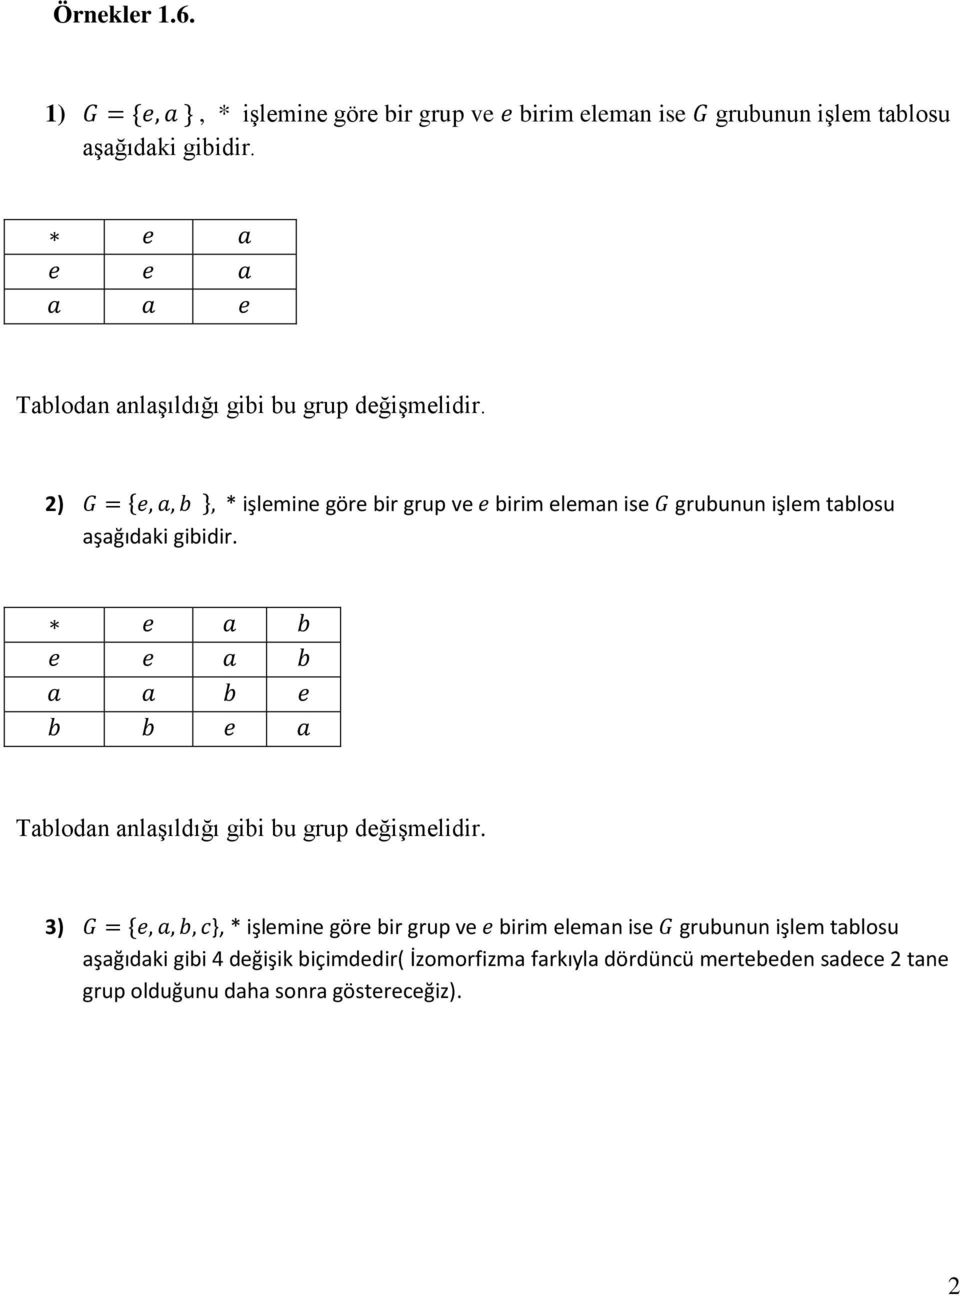 2) * işlemine göre bir grup ve birim eleman ise grubunun işlem tablosu aşağıdaki gibidir.